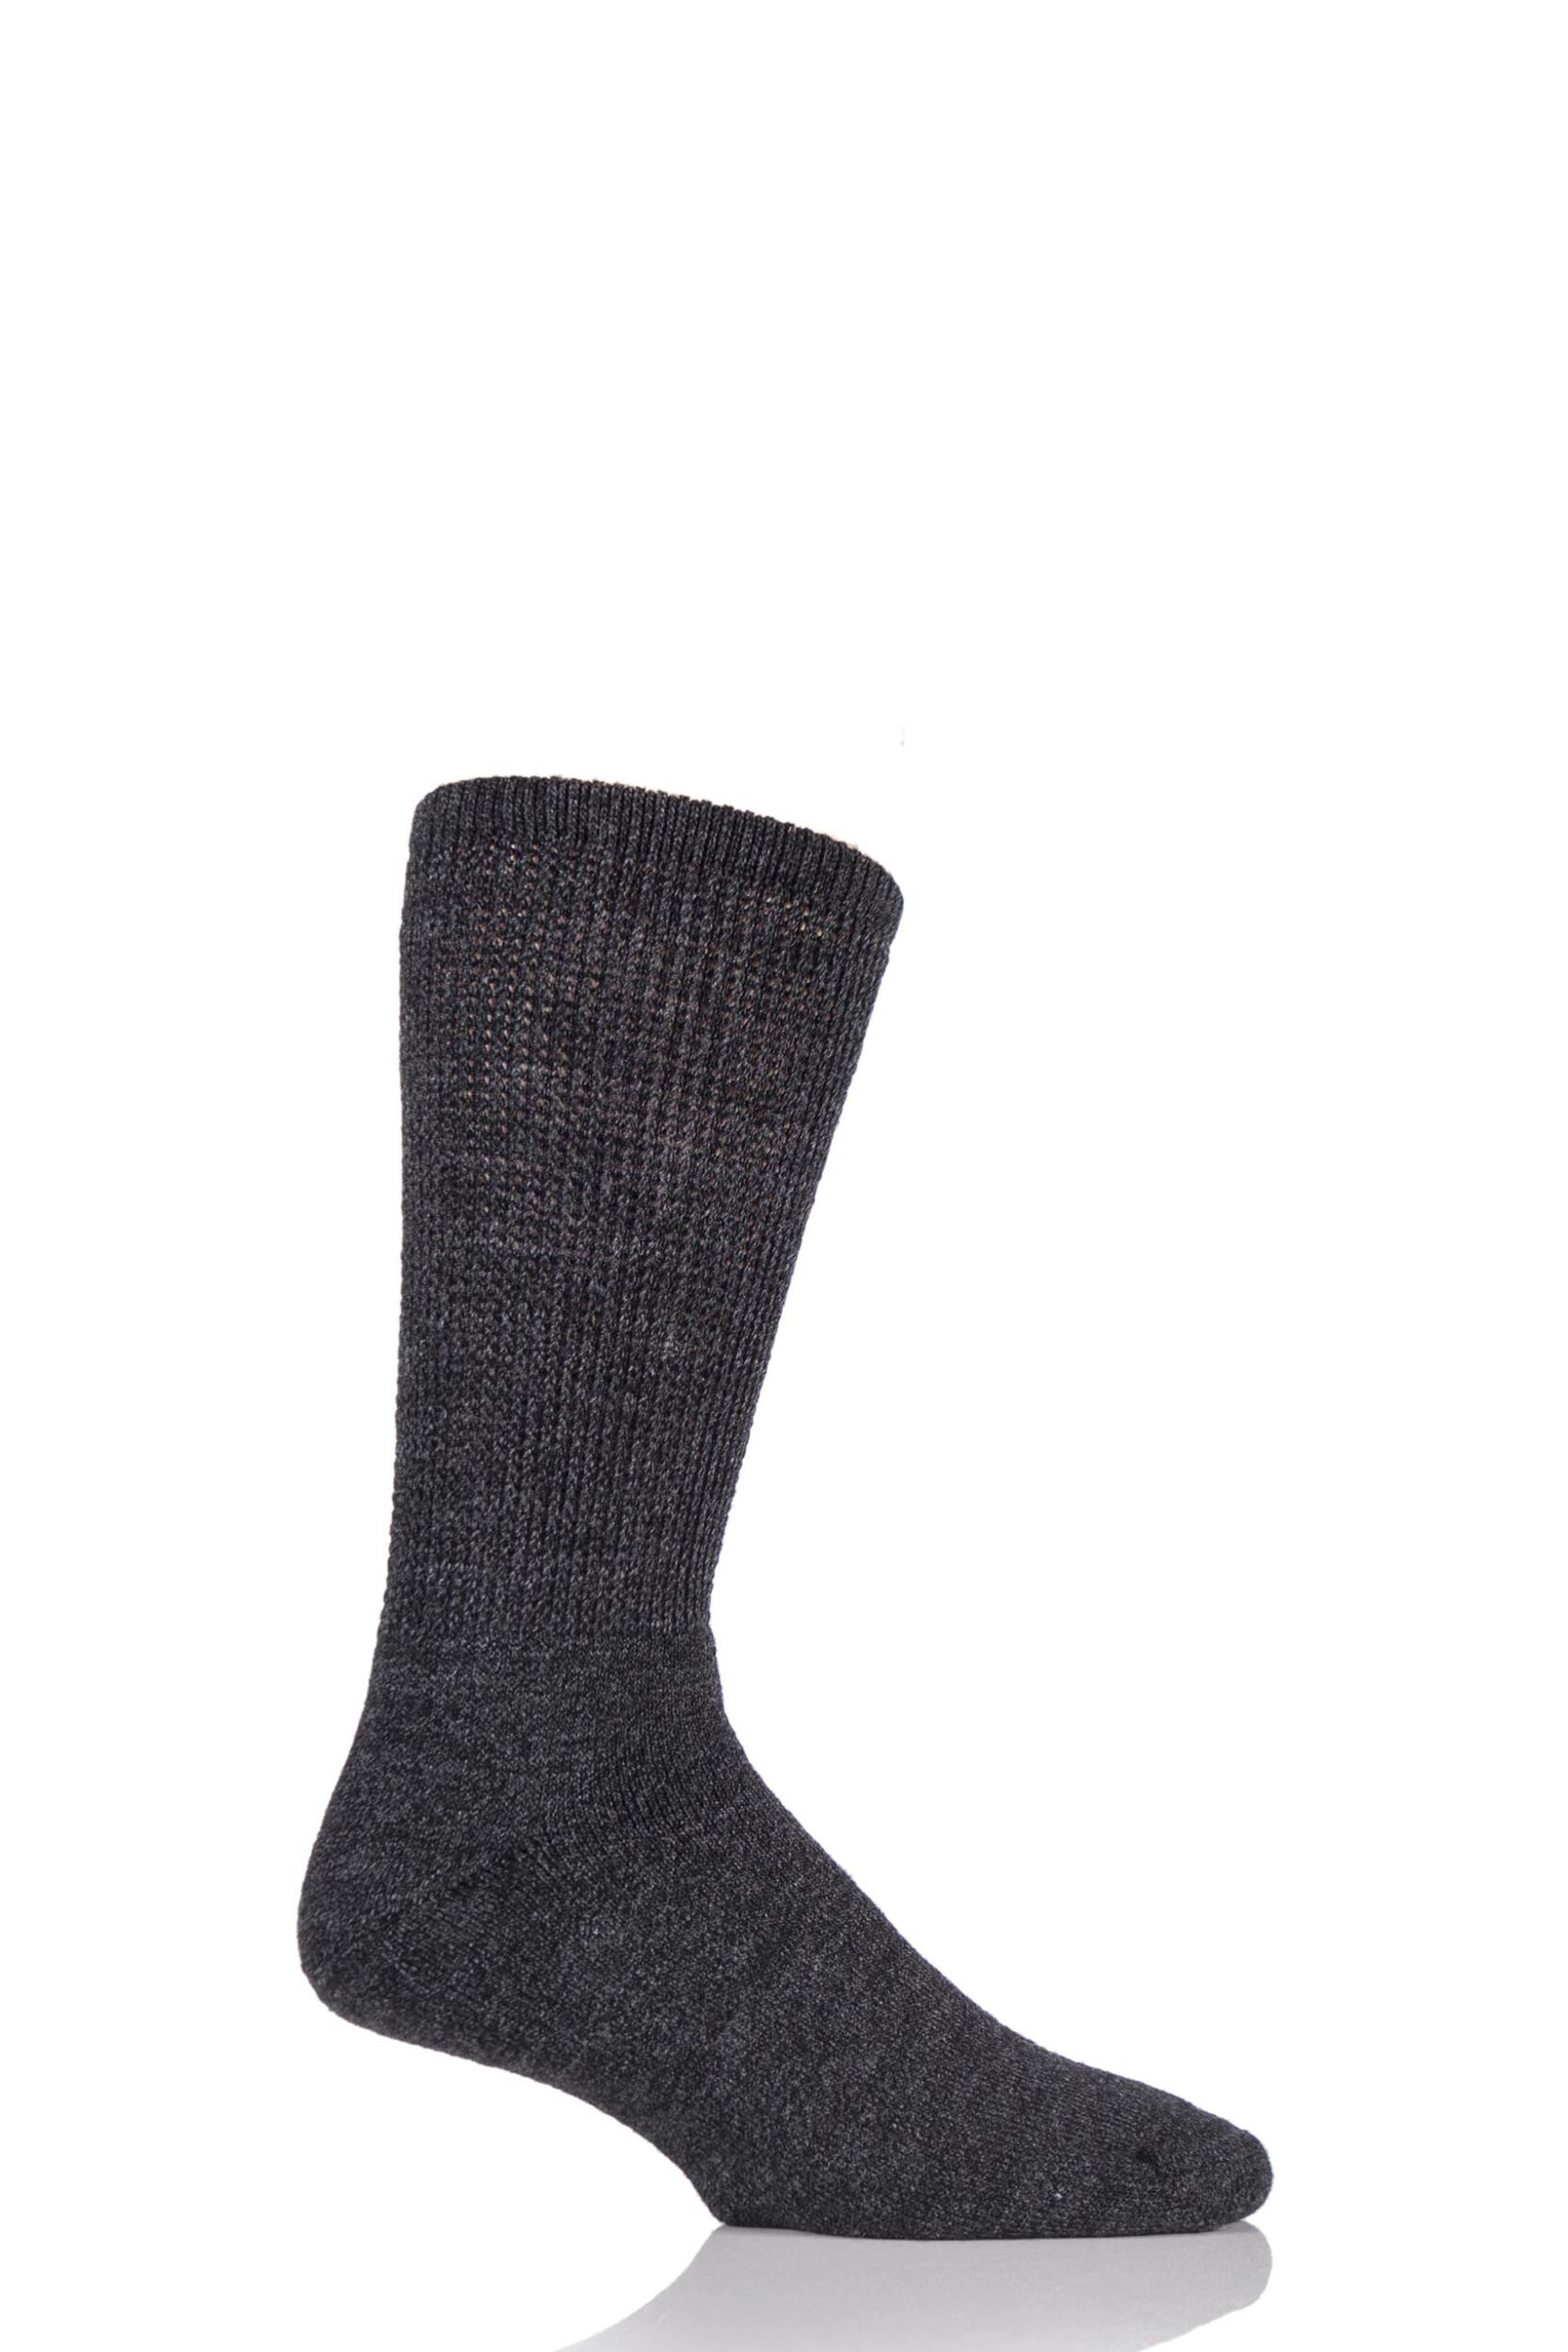 Mens 1 Pair HJ Hall Wool Diabetic Socks | eBay